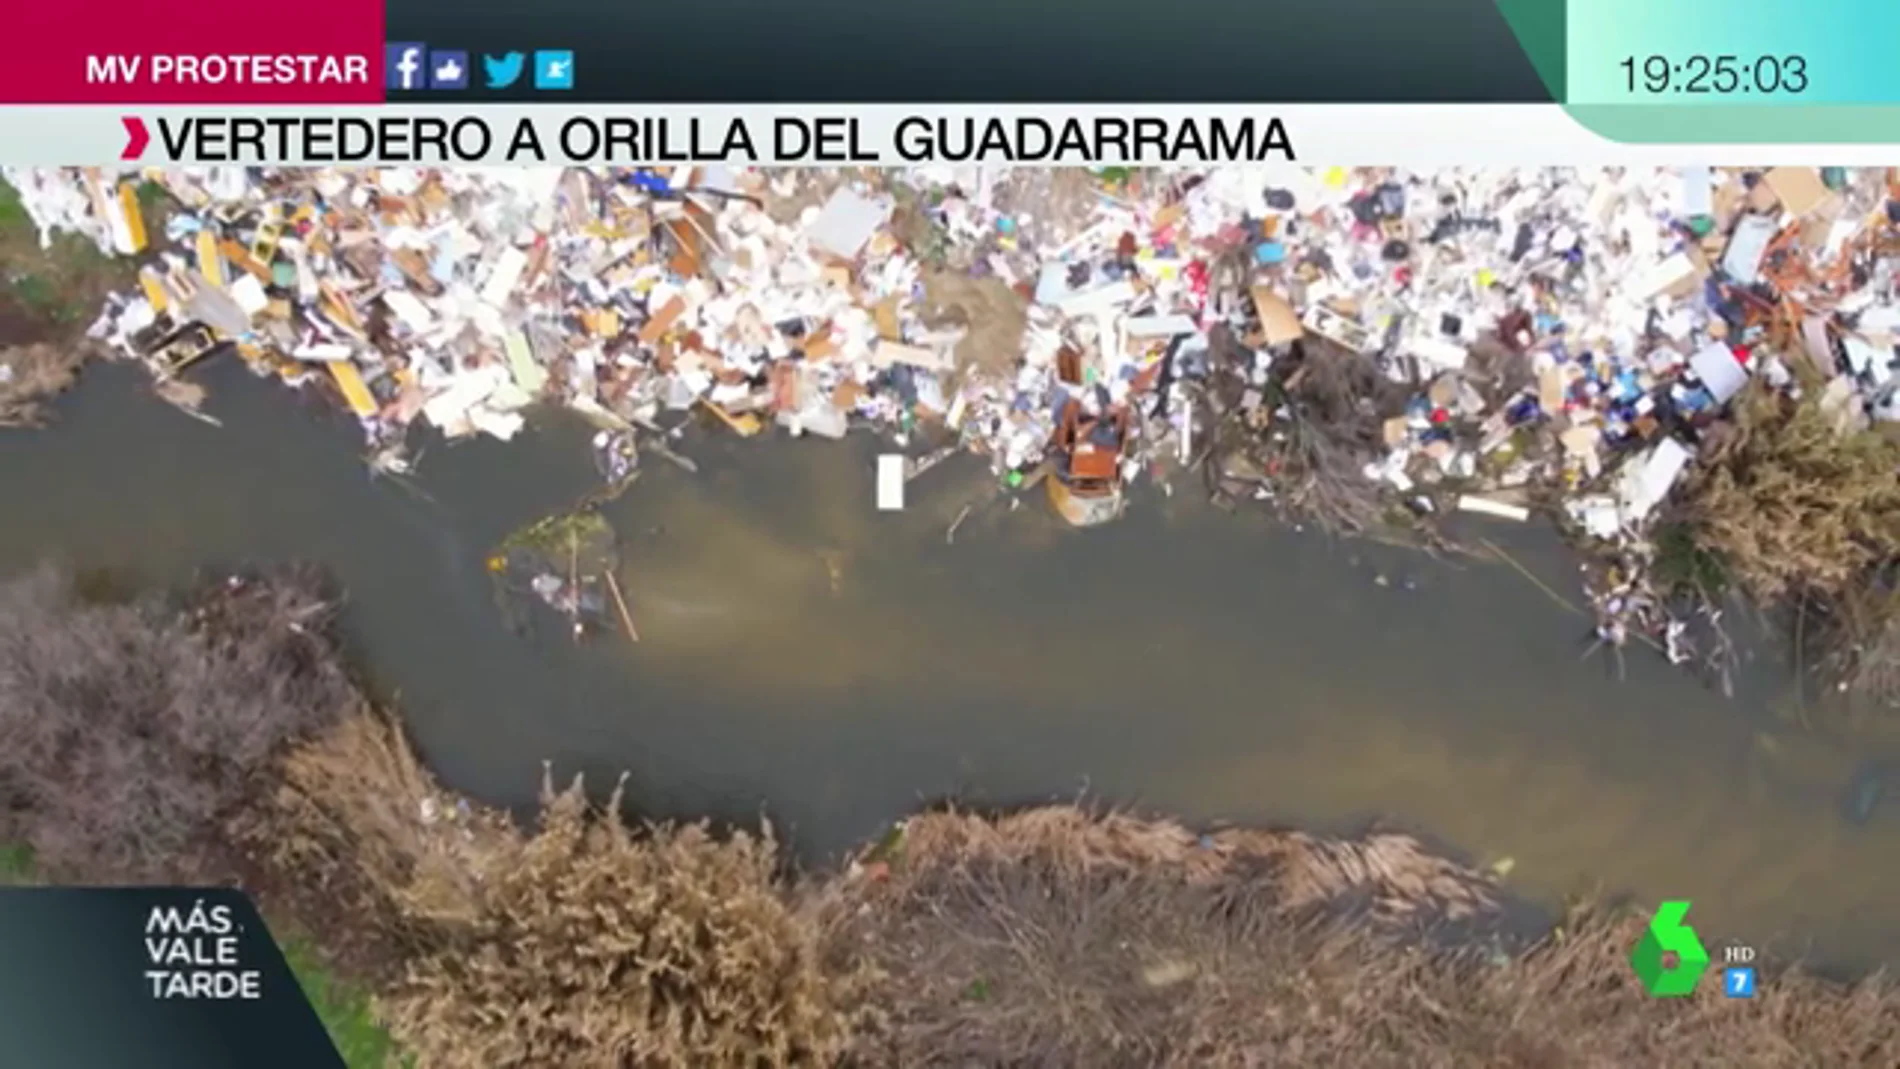 Coches calcinados, pilas de escombros y electrodomésticos abandonados: así es el vertedero ilegal junto al río Guadarrama